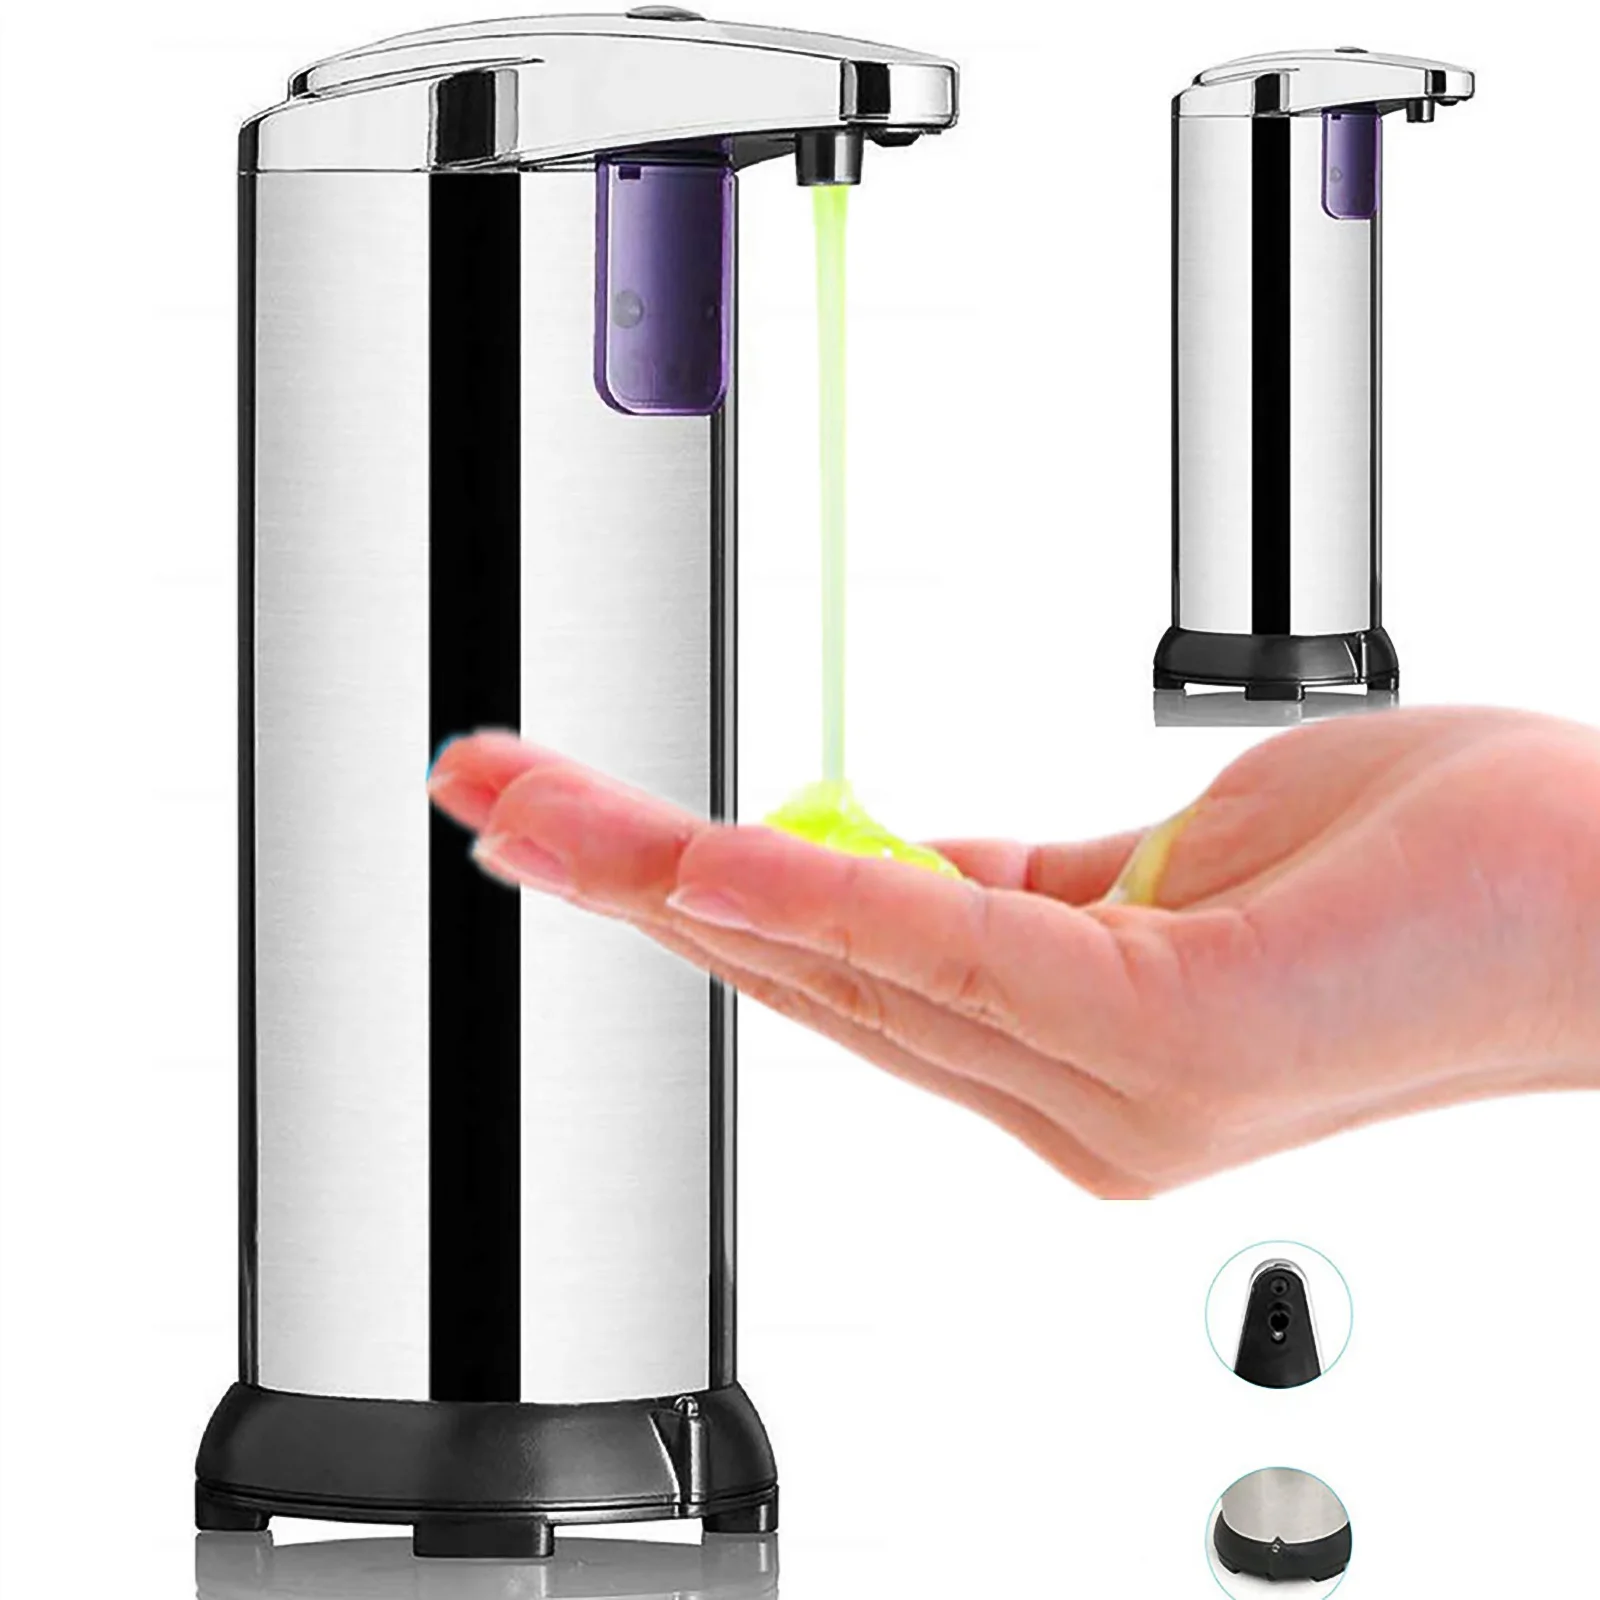 

250ML Automatic Soap Dispenser Infrared Touchless Motion Bathroom Dispenser Sensor Liquid Stainless Steel Soap Dispenser